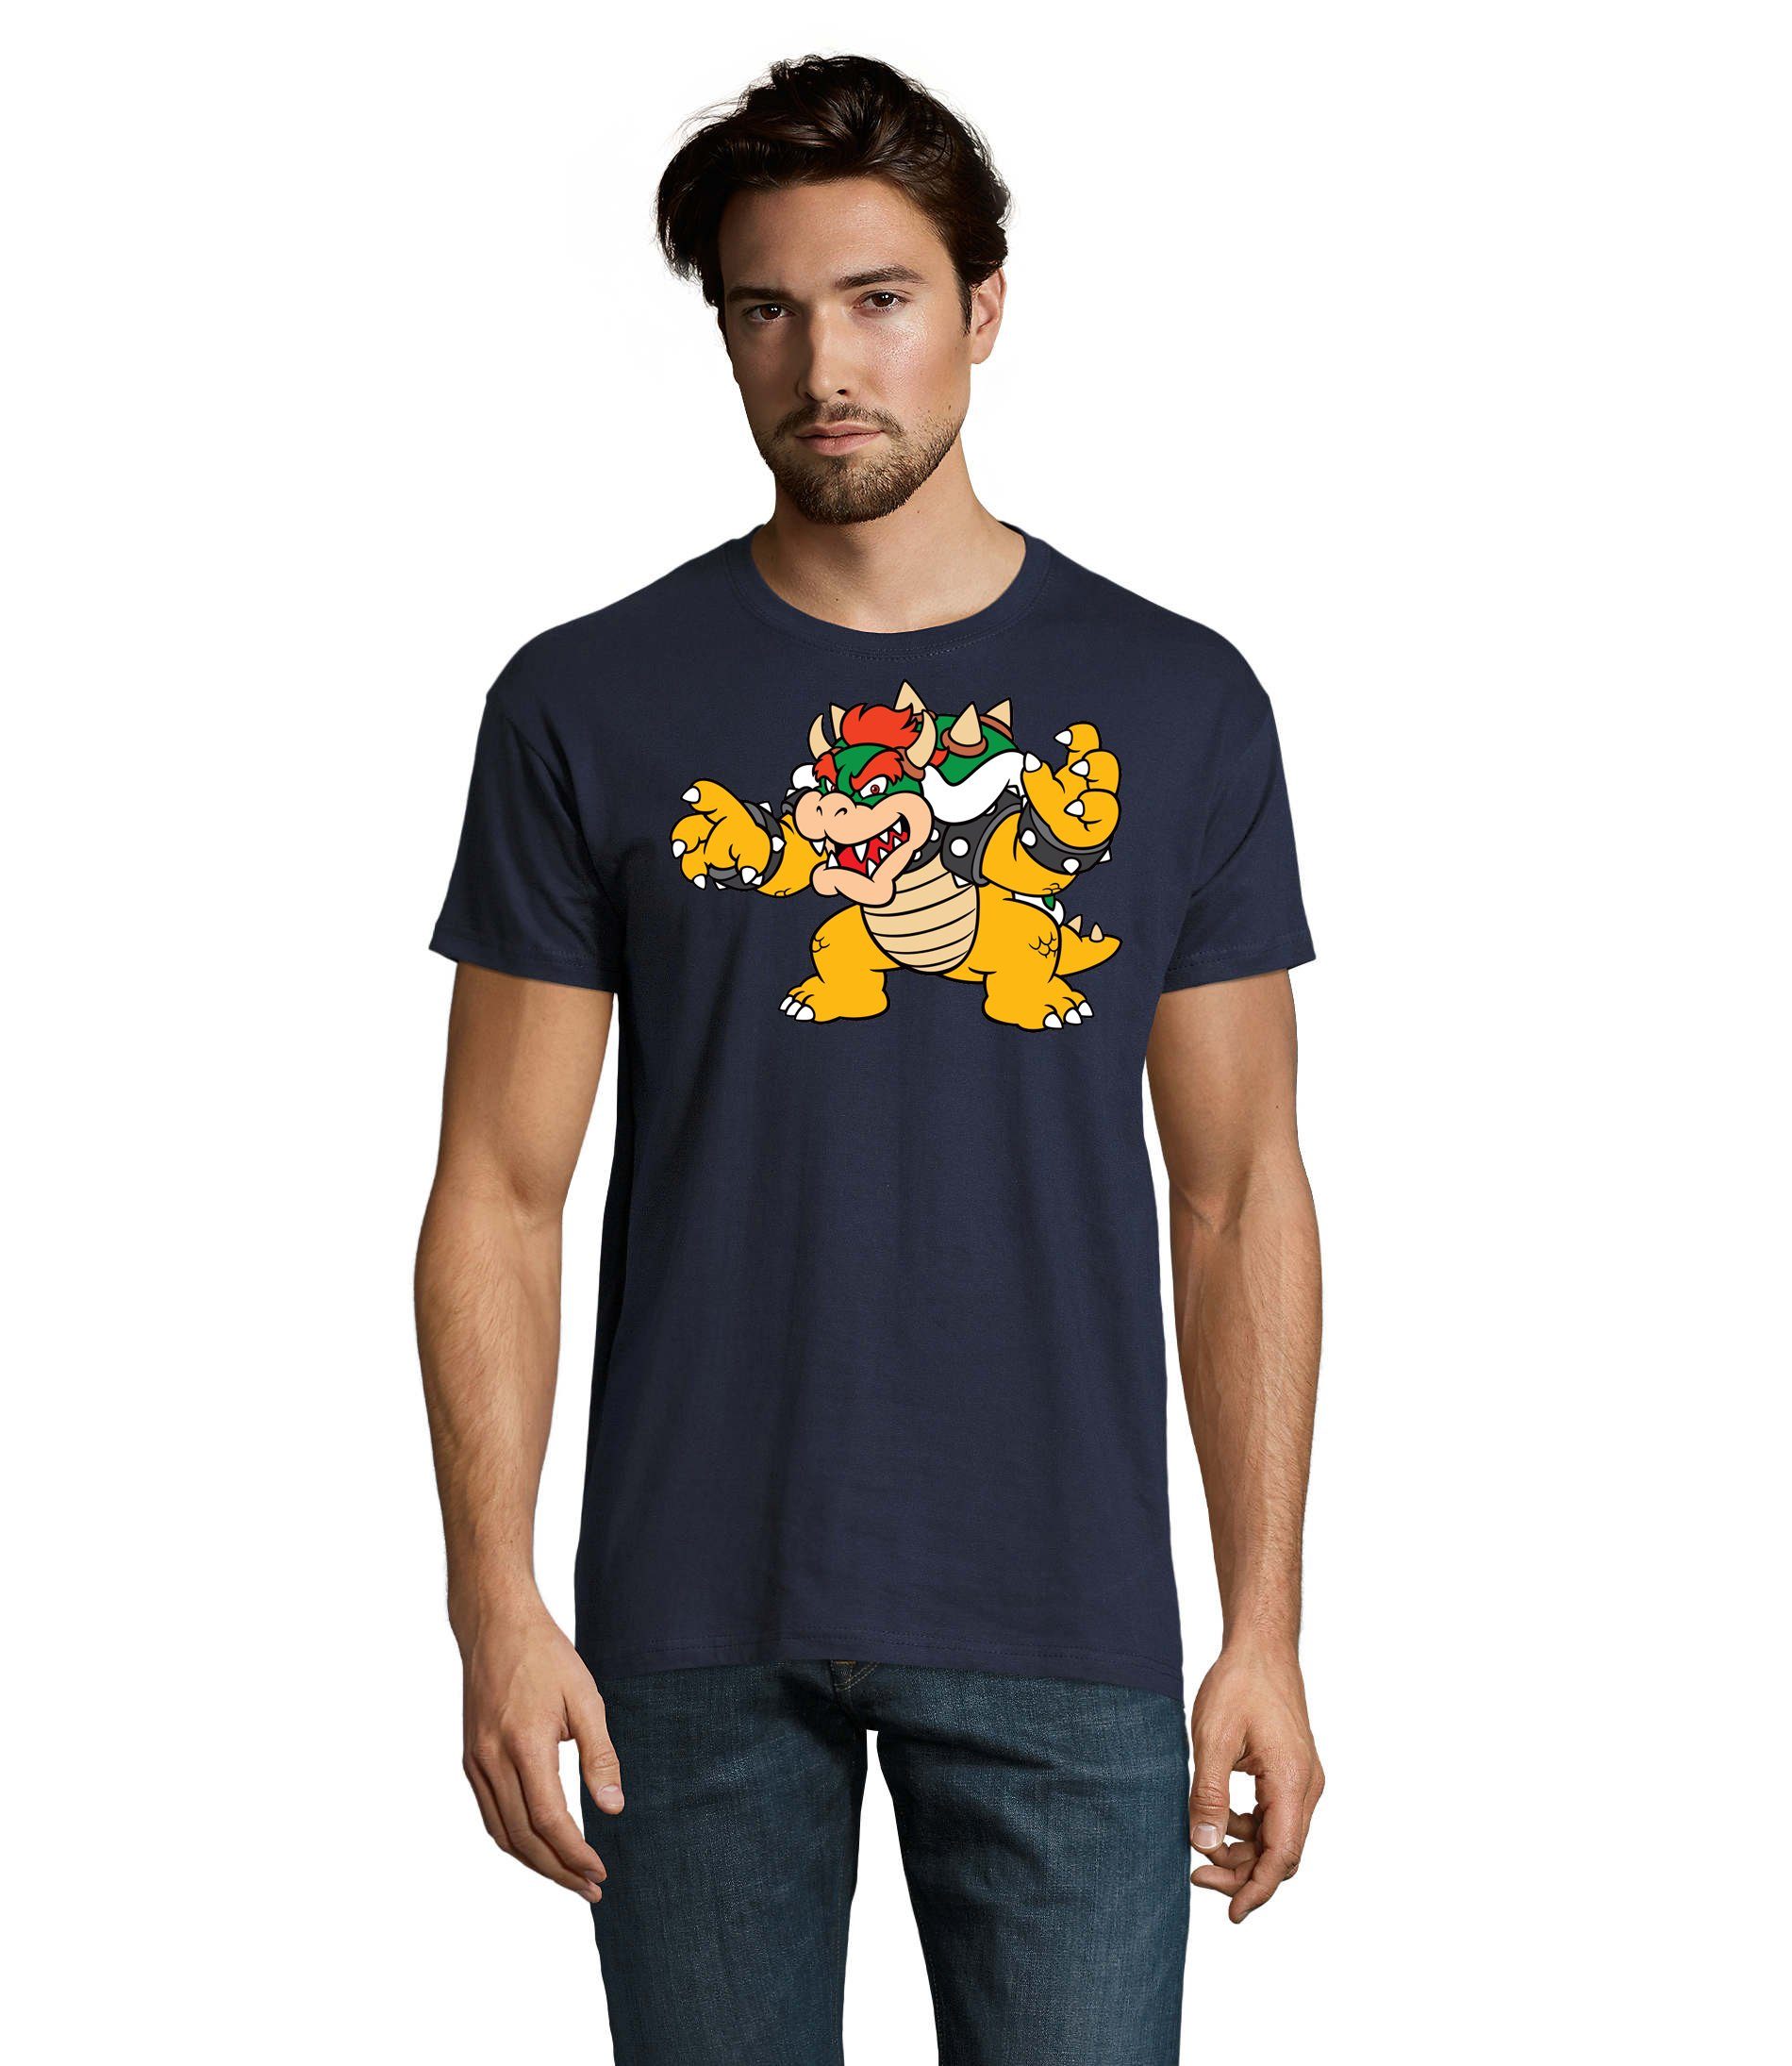 Blondie & Brownie T-Shirt Herren Nintendo Mario Yoshi Luigi Game Gamer Gaming Konsole Navyblau